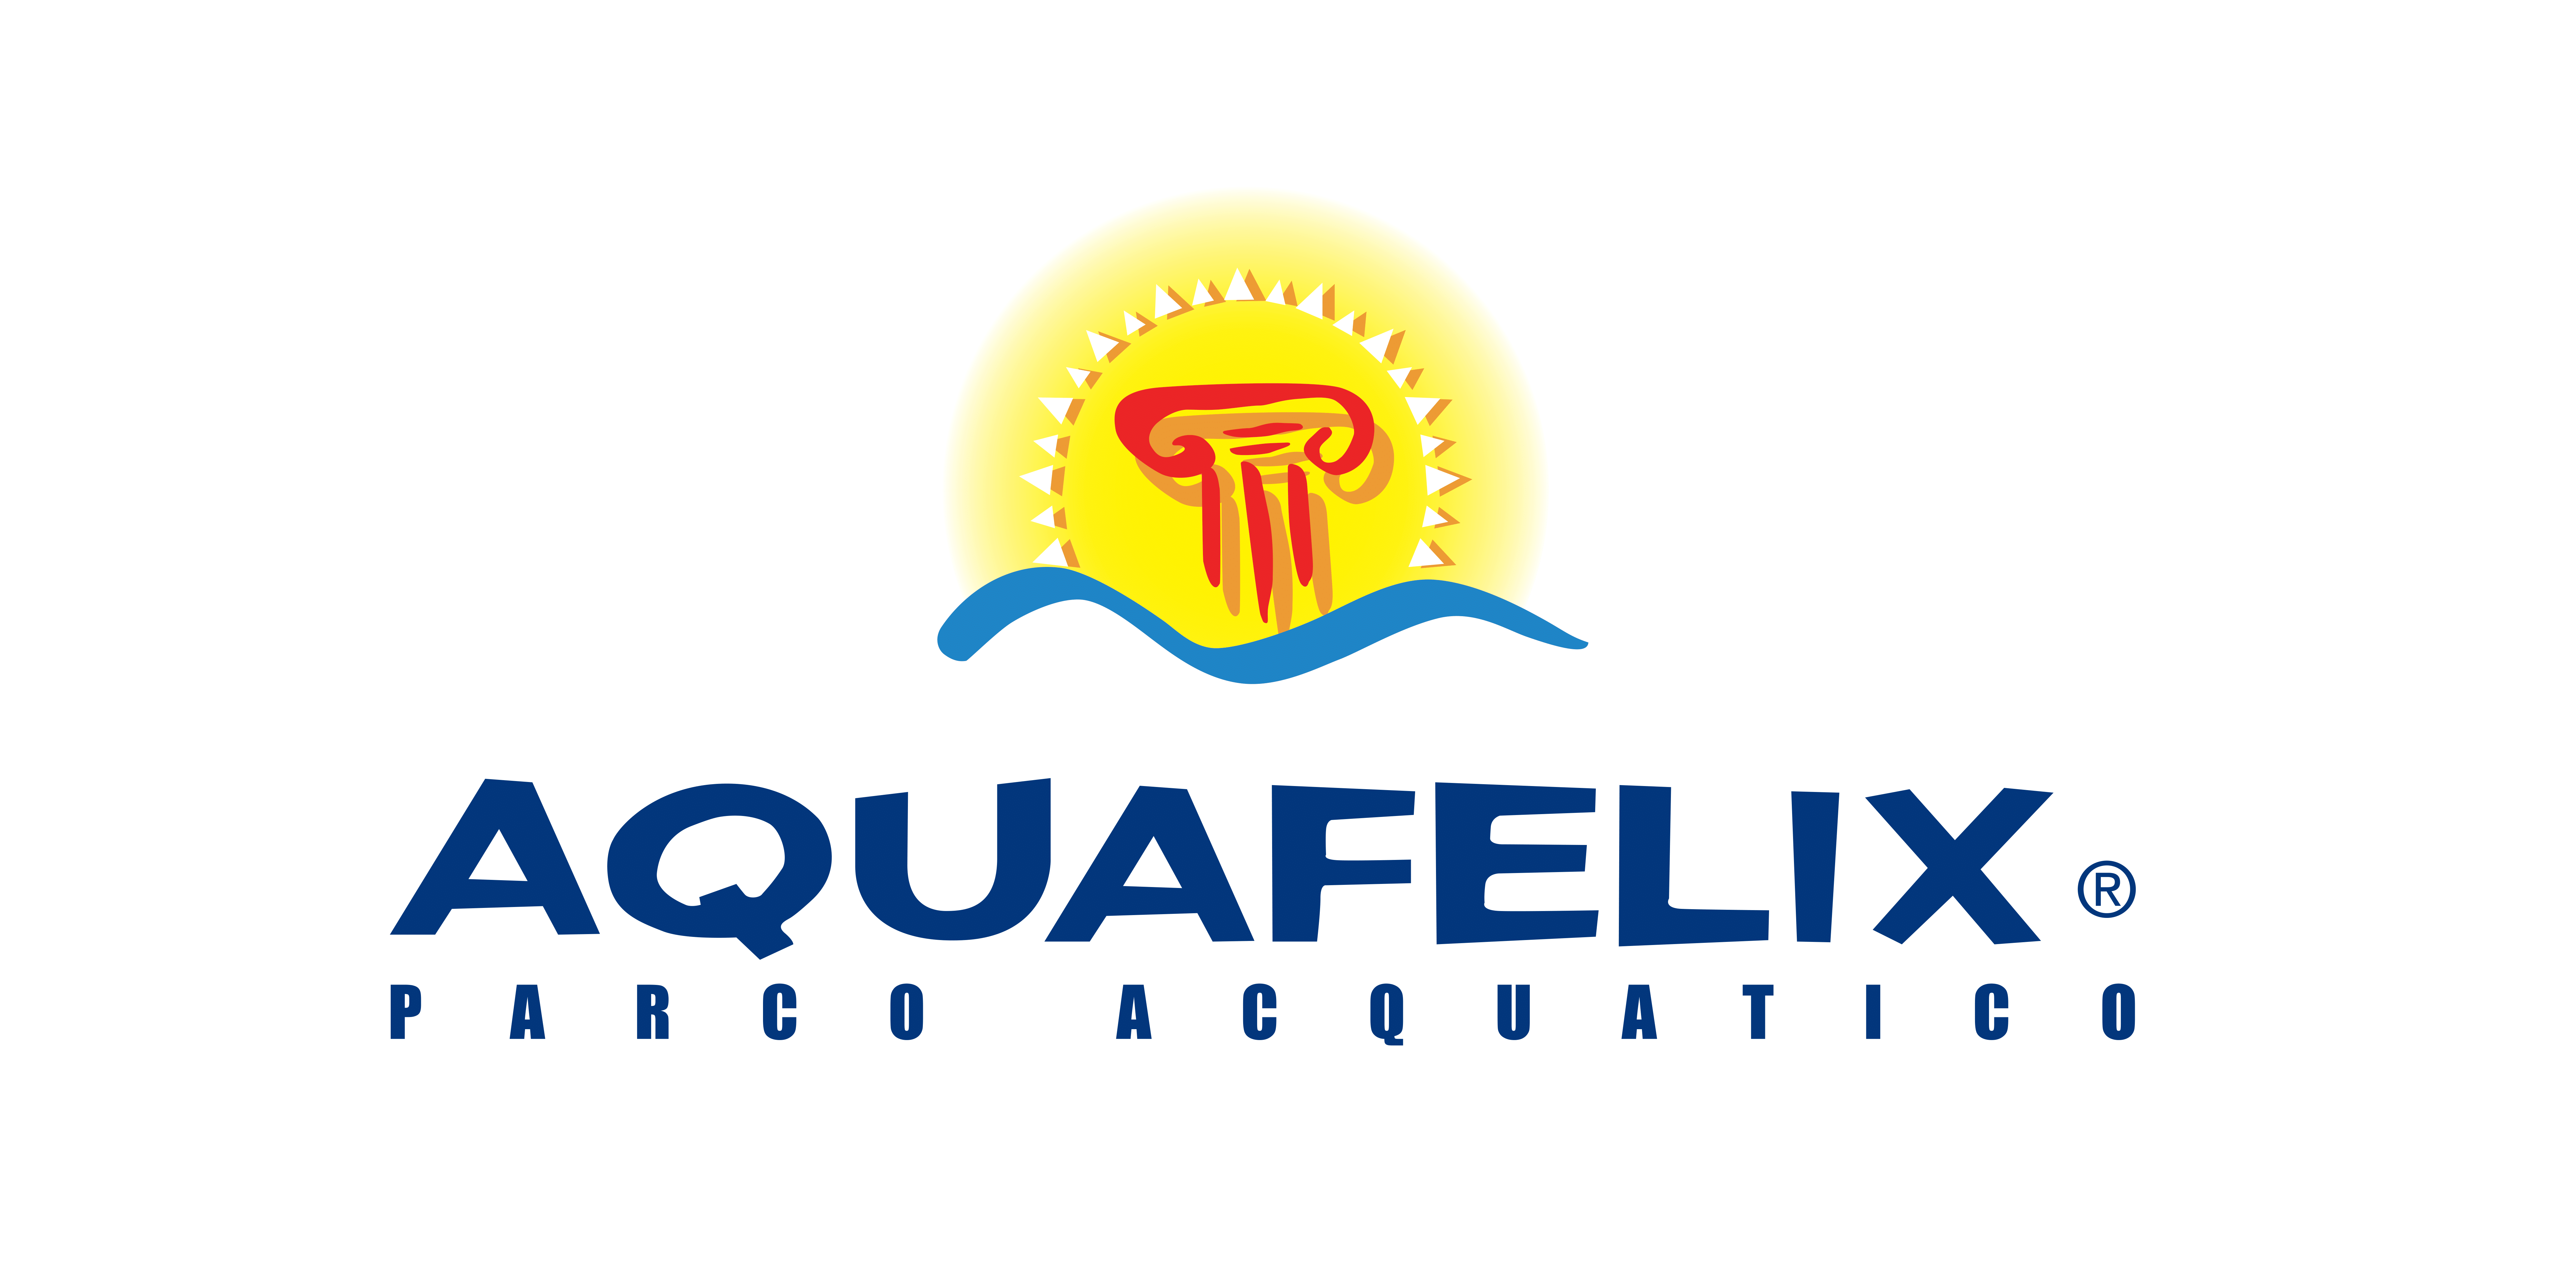 50% discount on Aquafelix